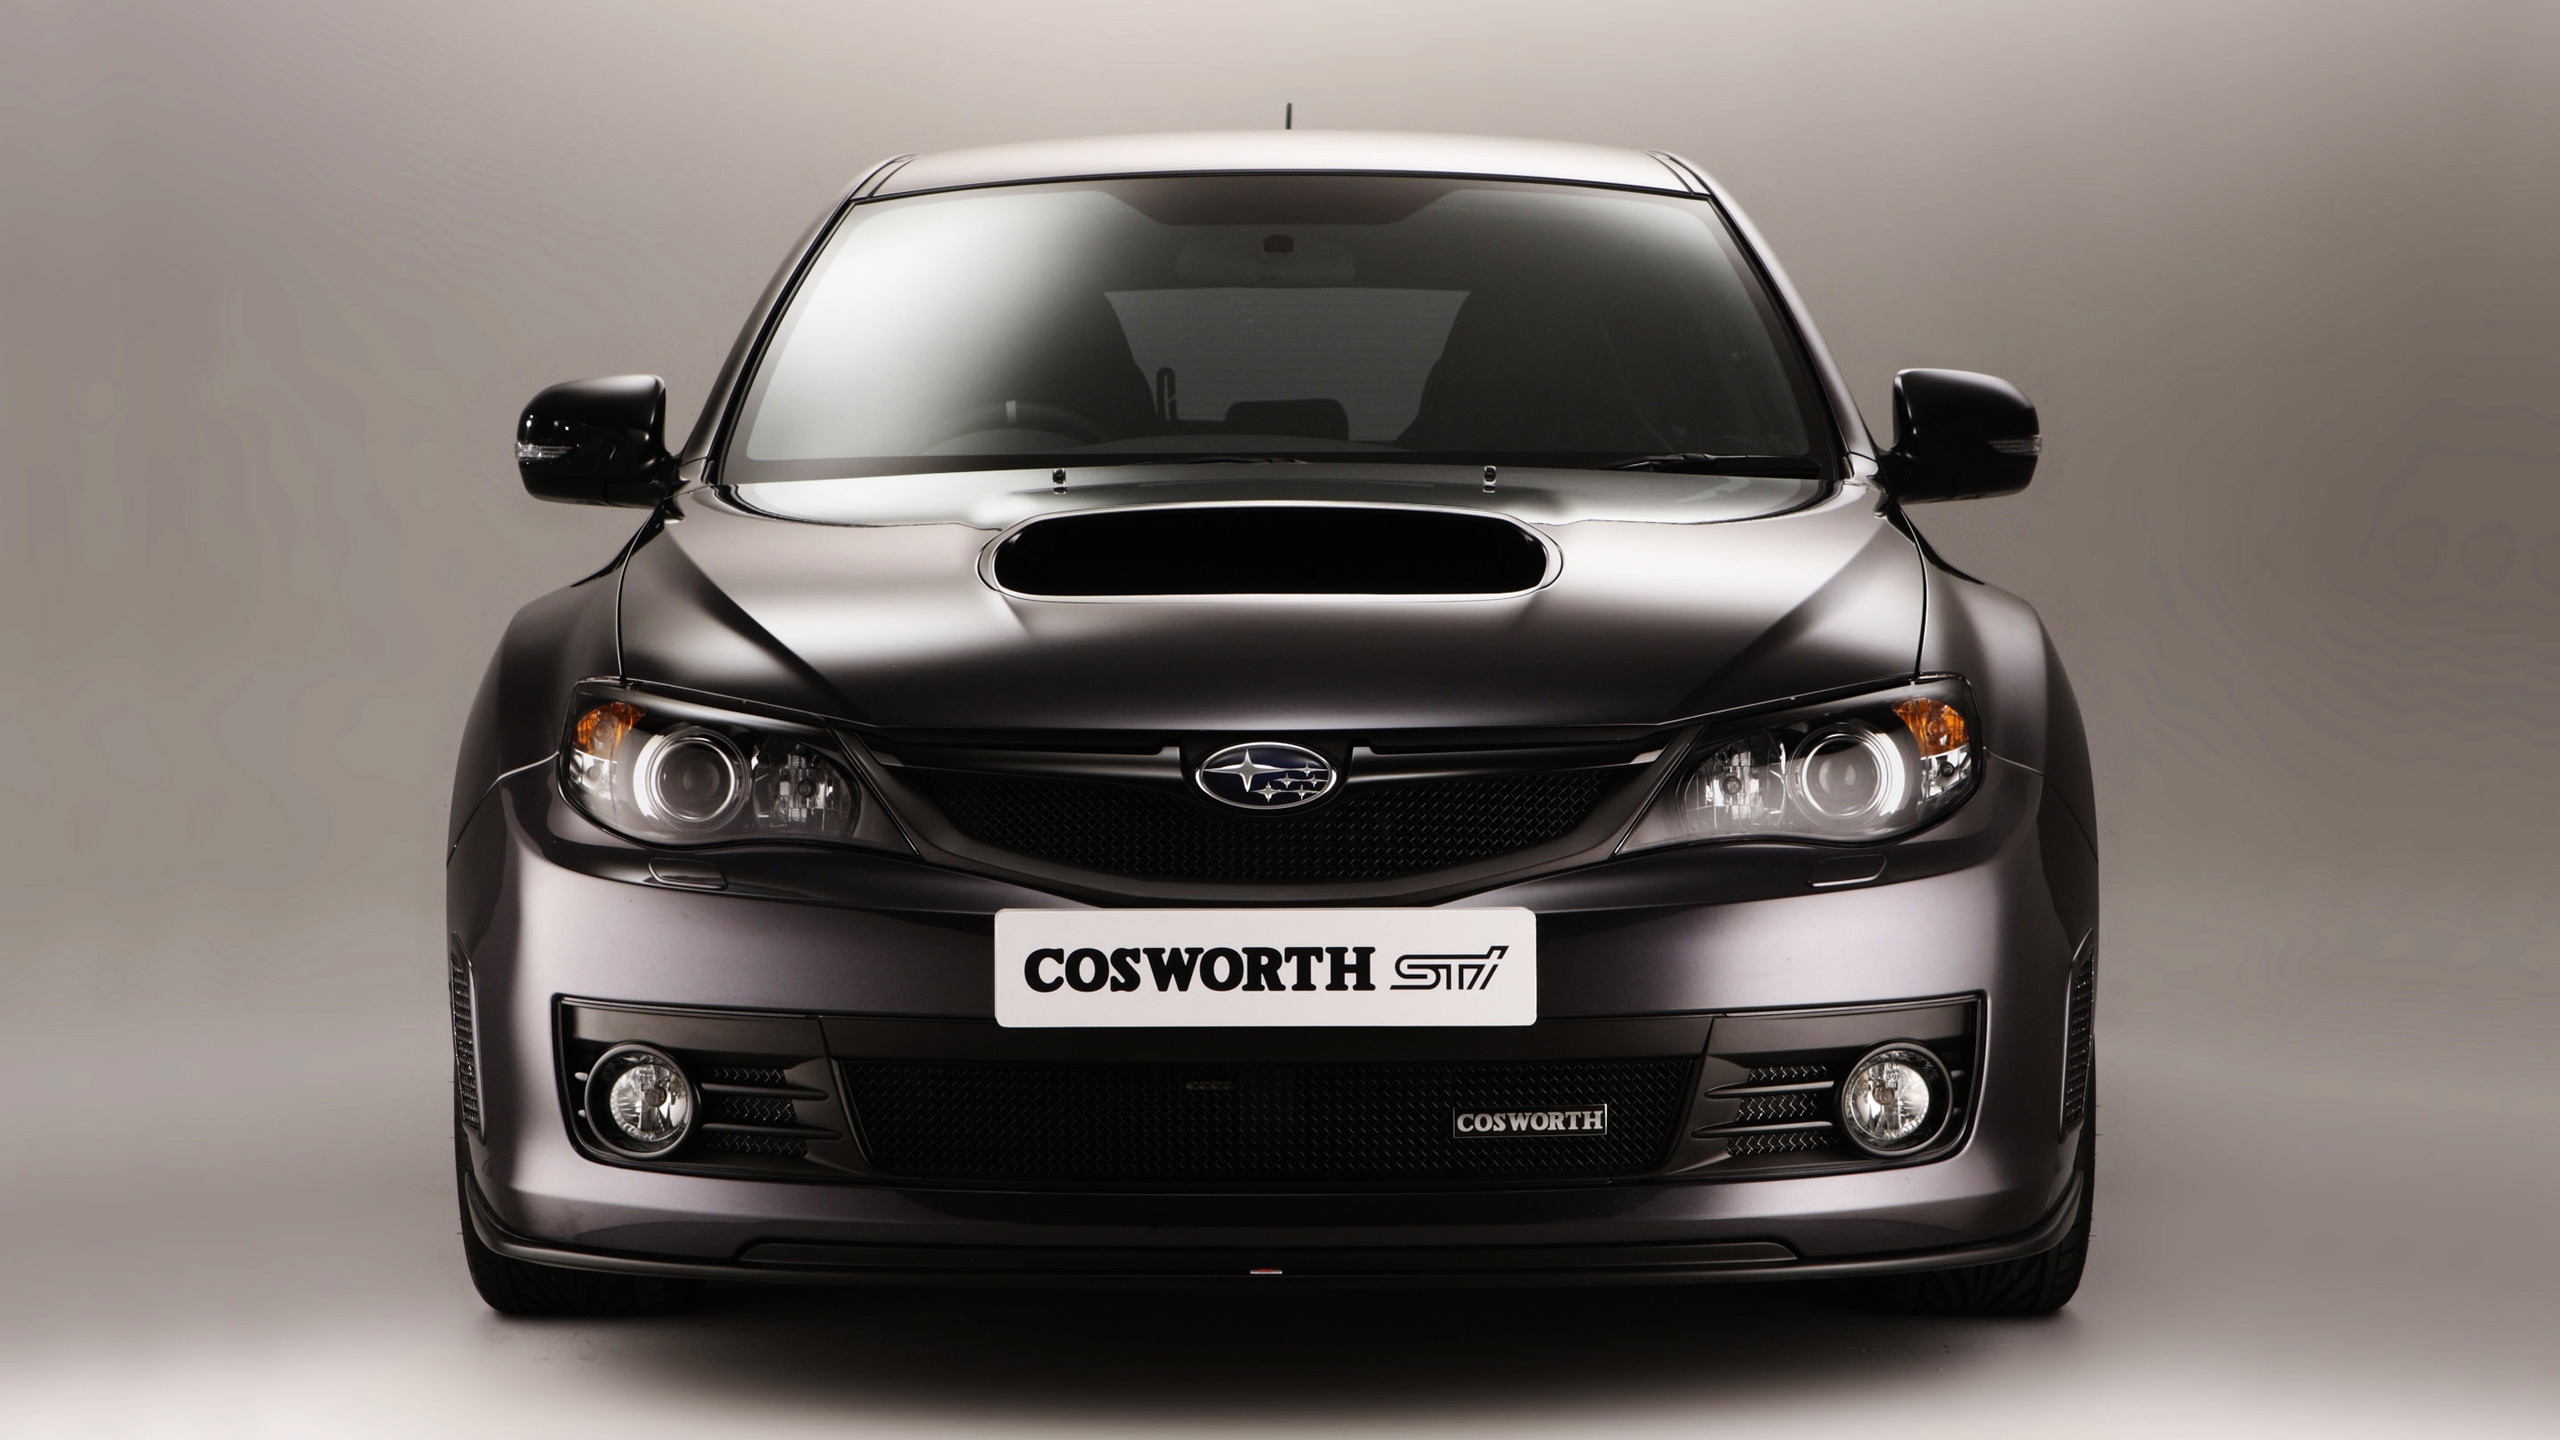 Subaru Cosworth Impreza for 2560x1440 HDTV resolution